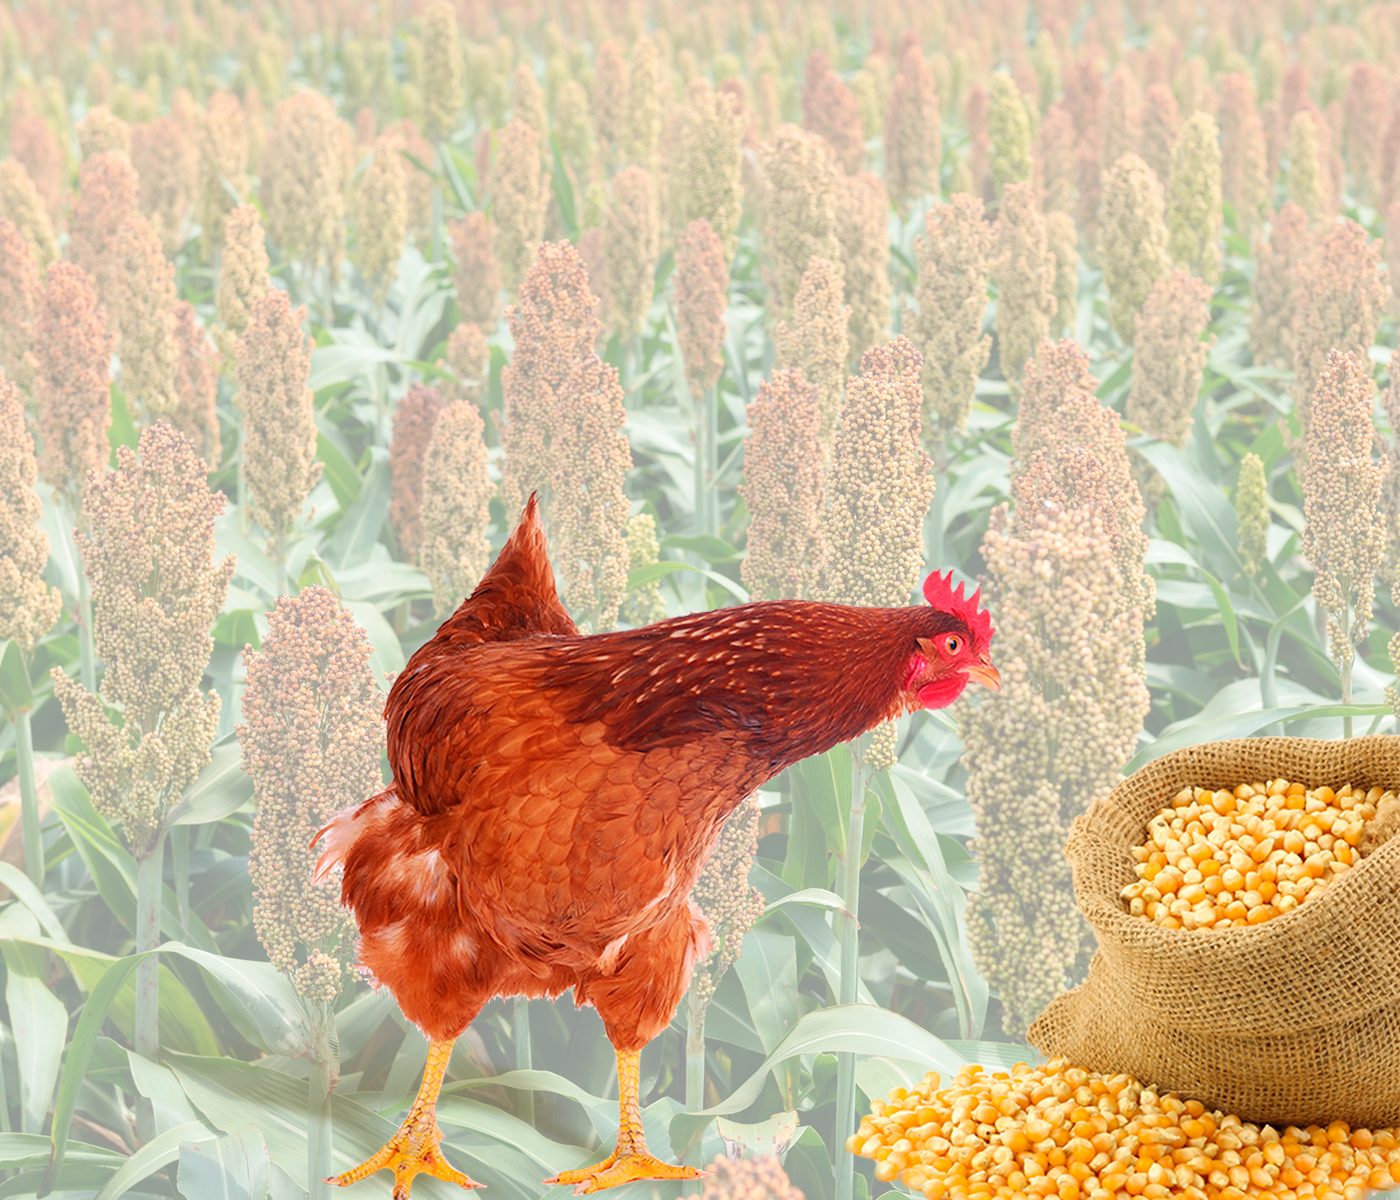 Grano de sorgo como reemplazo del maíz en dietas para aves